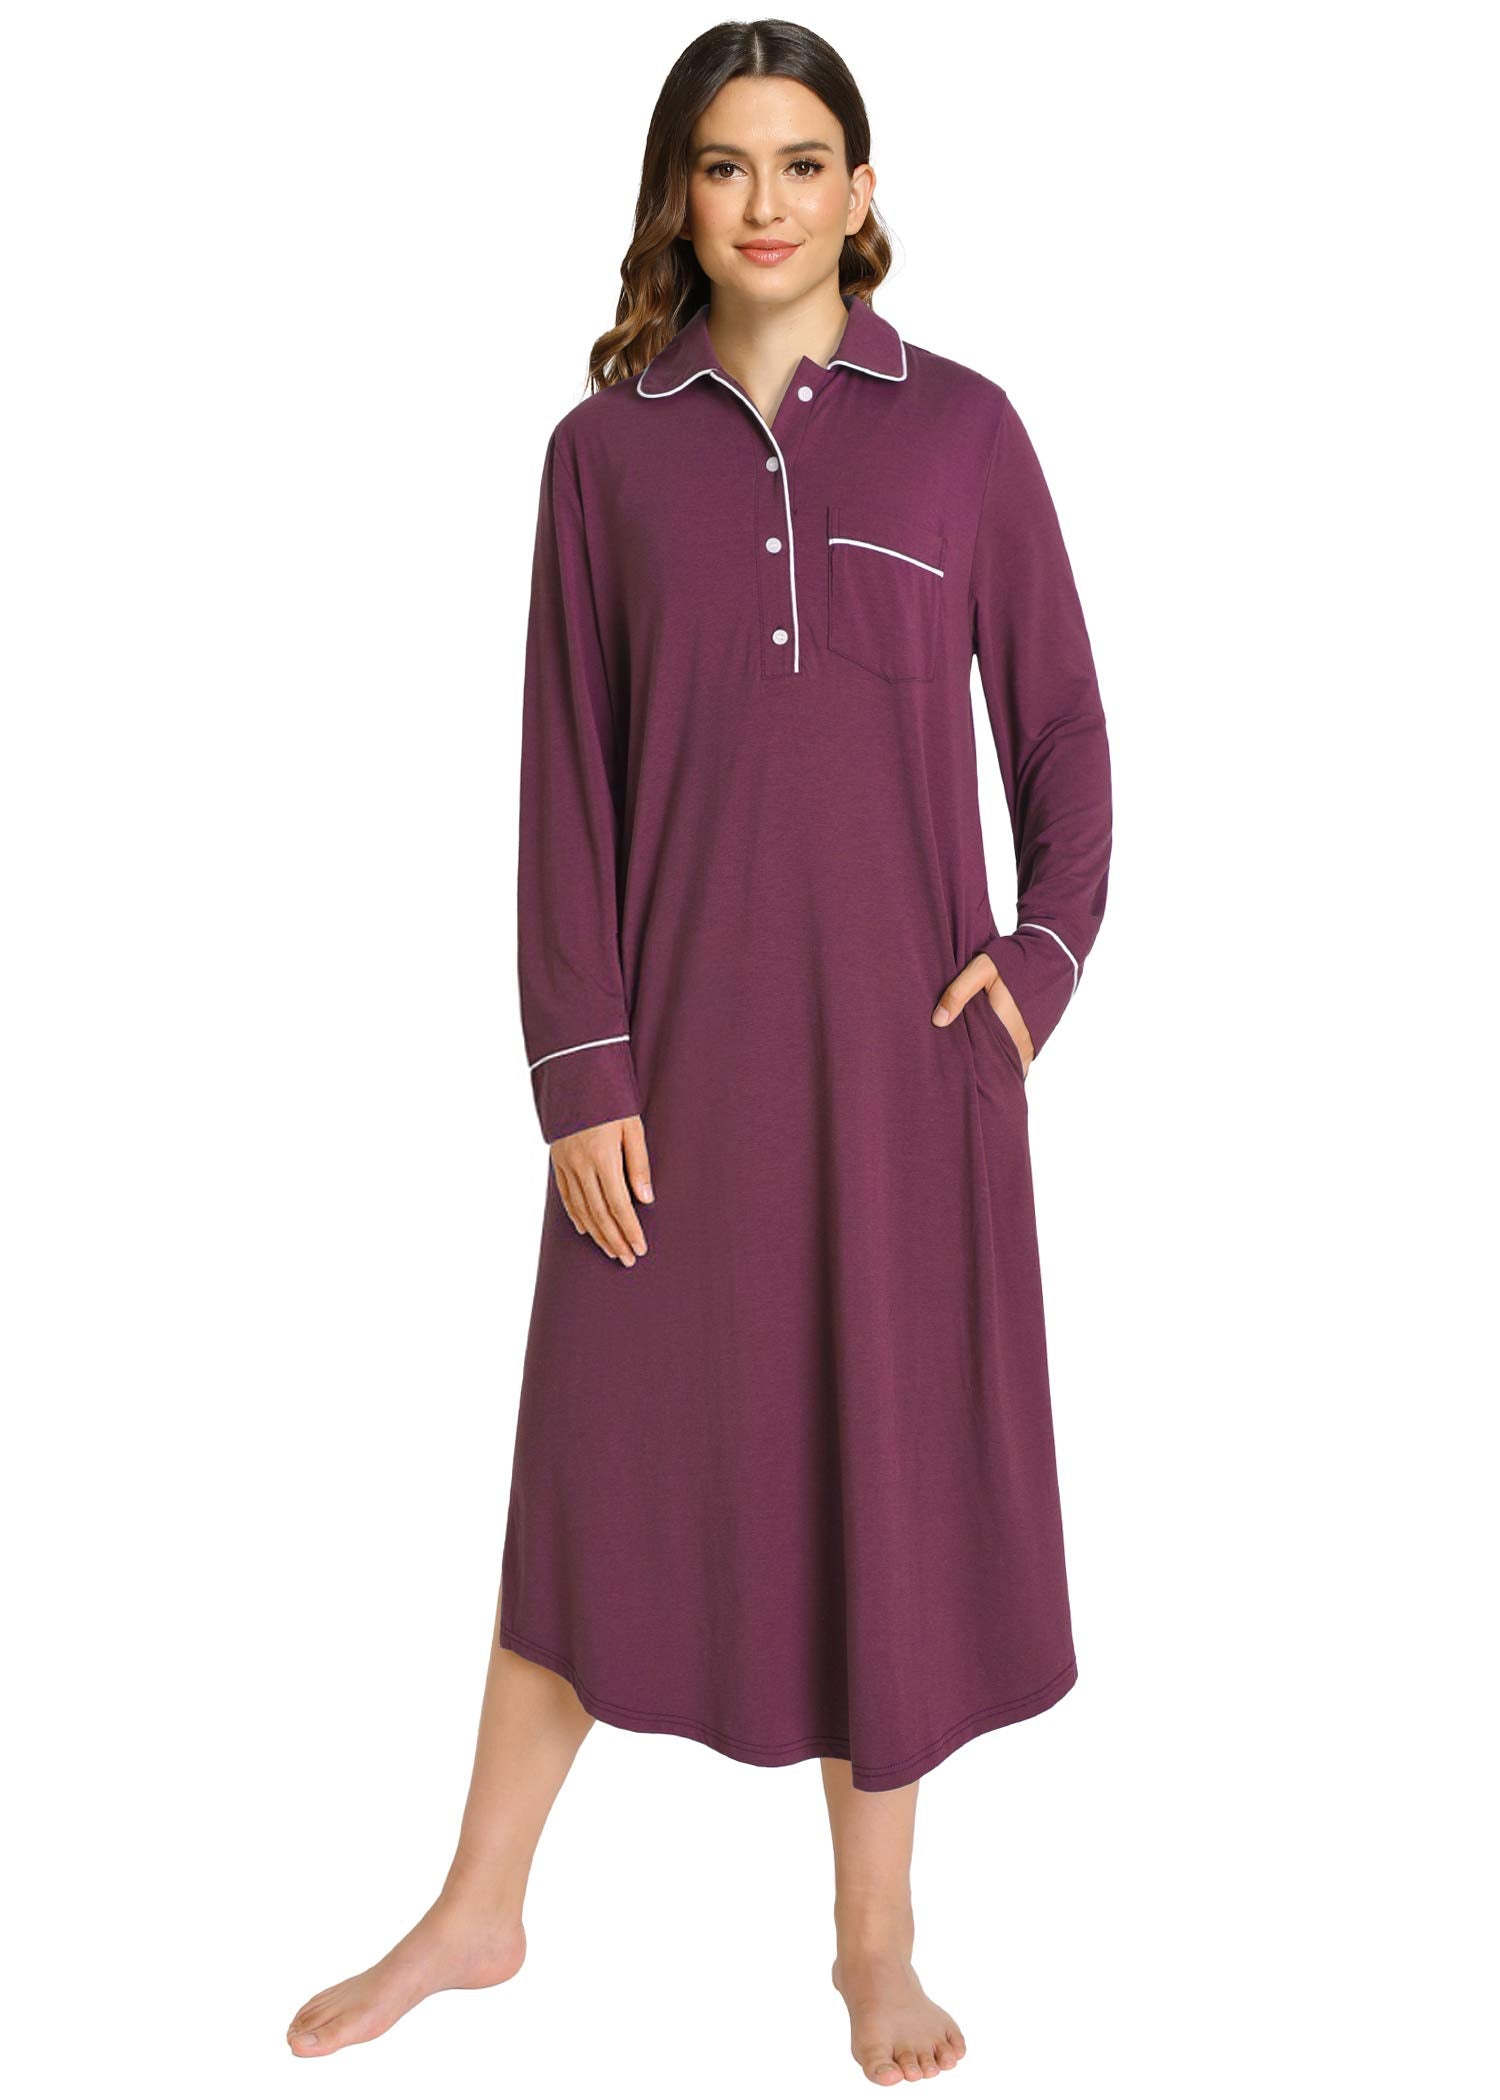 Women's Button Down Sleep Shirt Long Sleeves Nightgown – Latuza